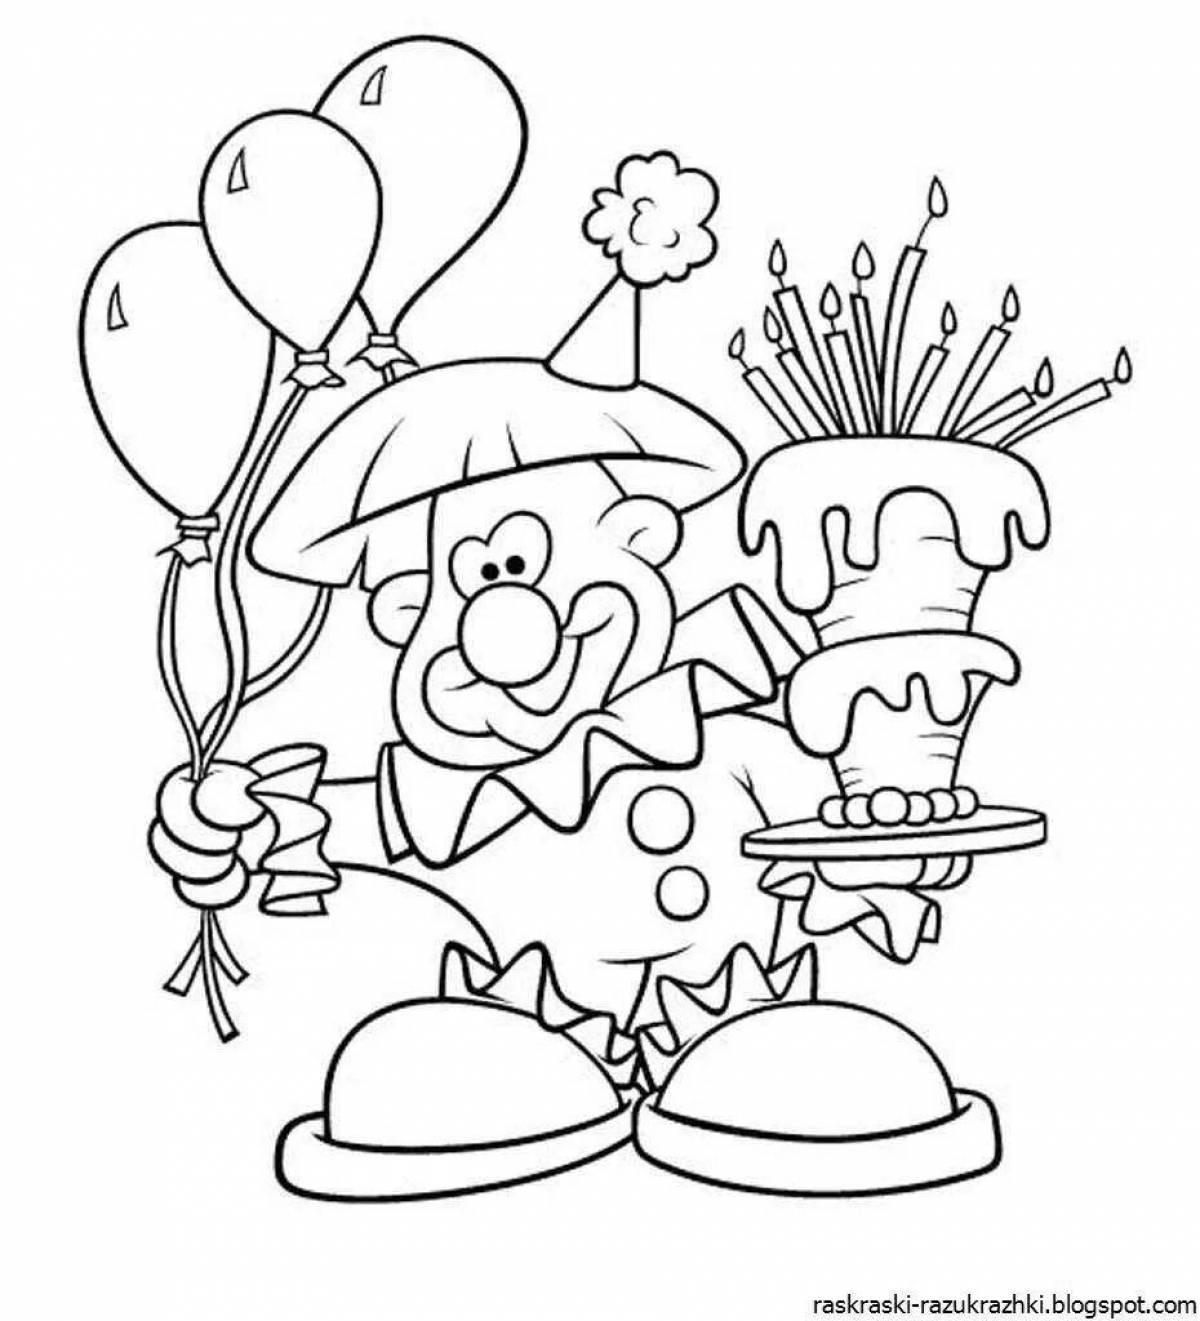 Dazzling happy birthday coloring book